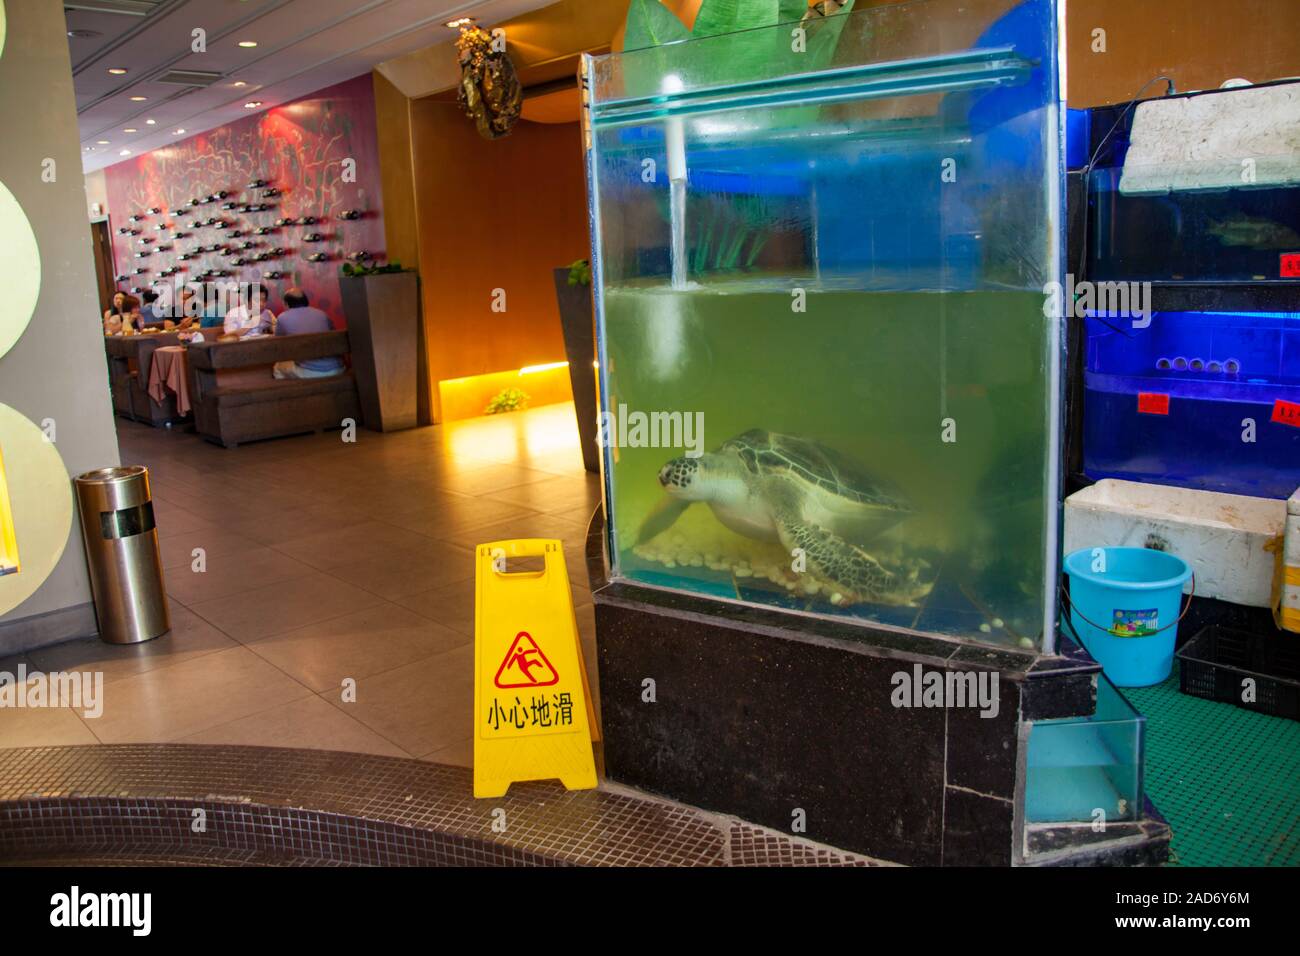 Live Green Sea Turtle, Chelonia mydas, eine bedrohte Art, im Restaurant Aquarium in der Stadt Nanning, Guangxi, South Western China. Stockfoto